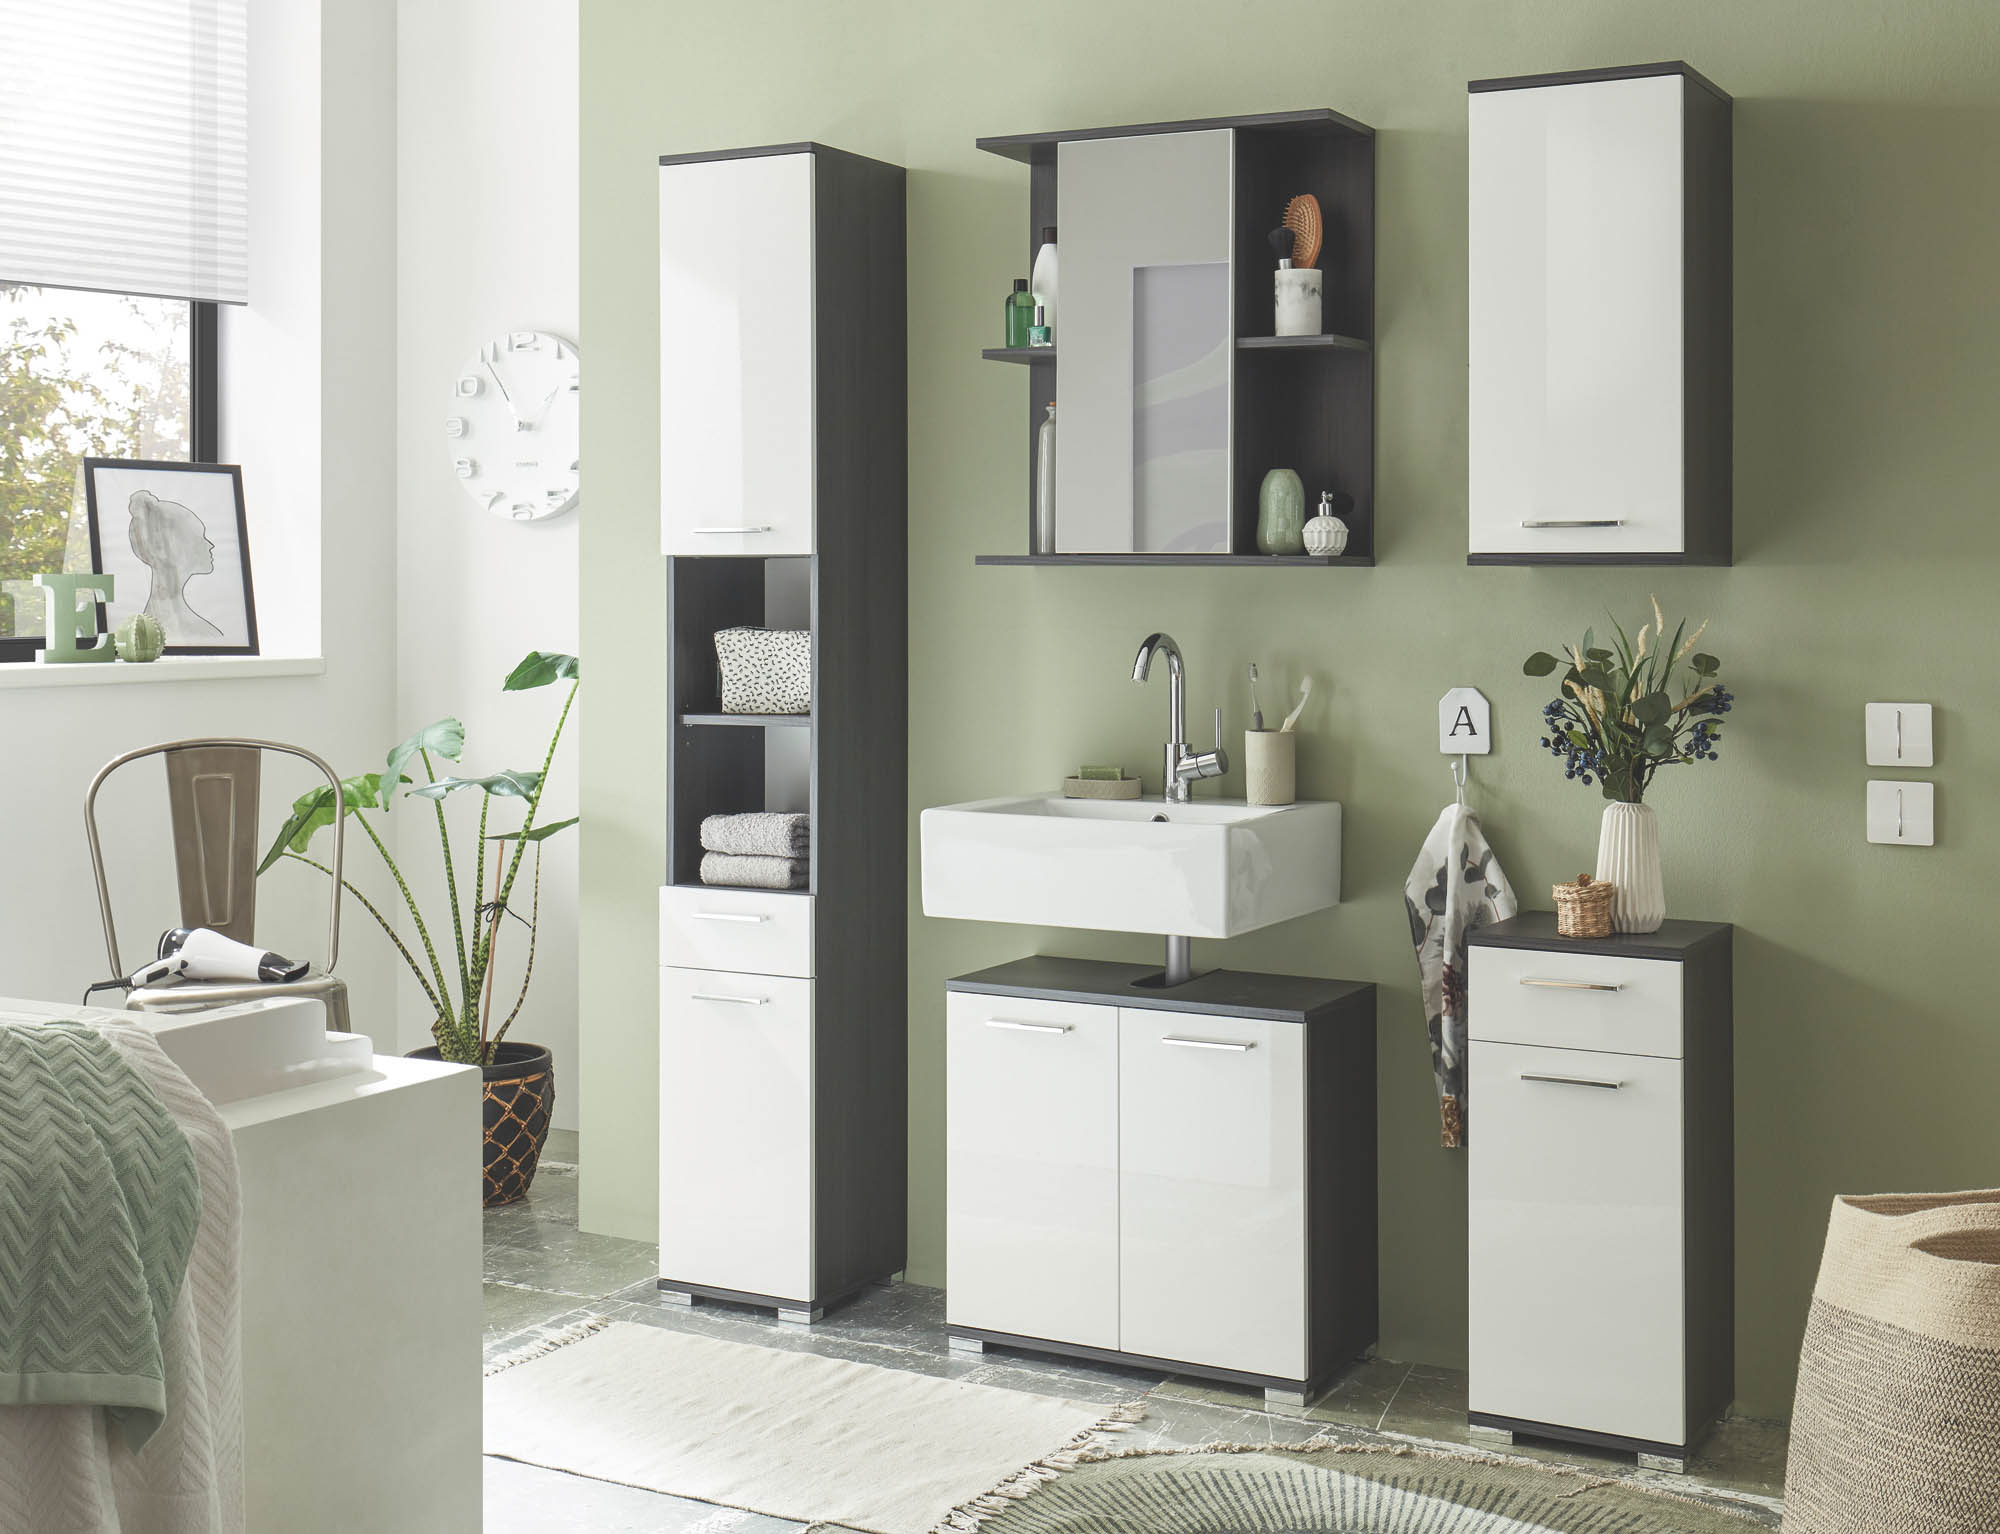 LANDO fürdőszobai tükrös faliszekrény, sötét norvég fenyő, fehér magasfényű. 60x70x20 cm